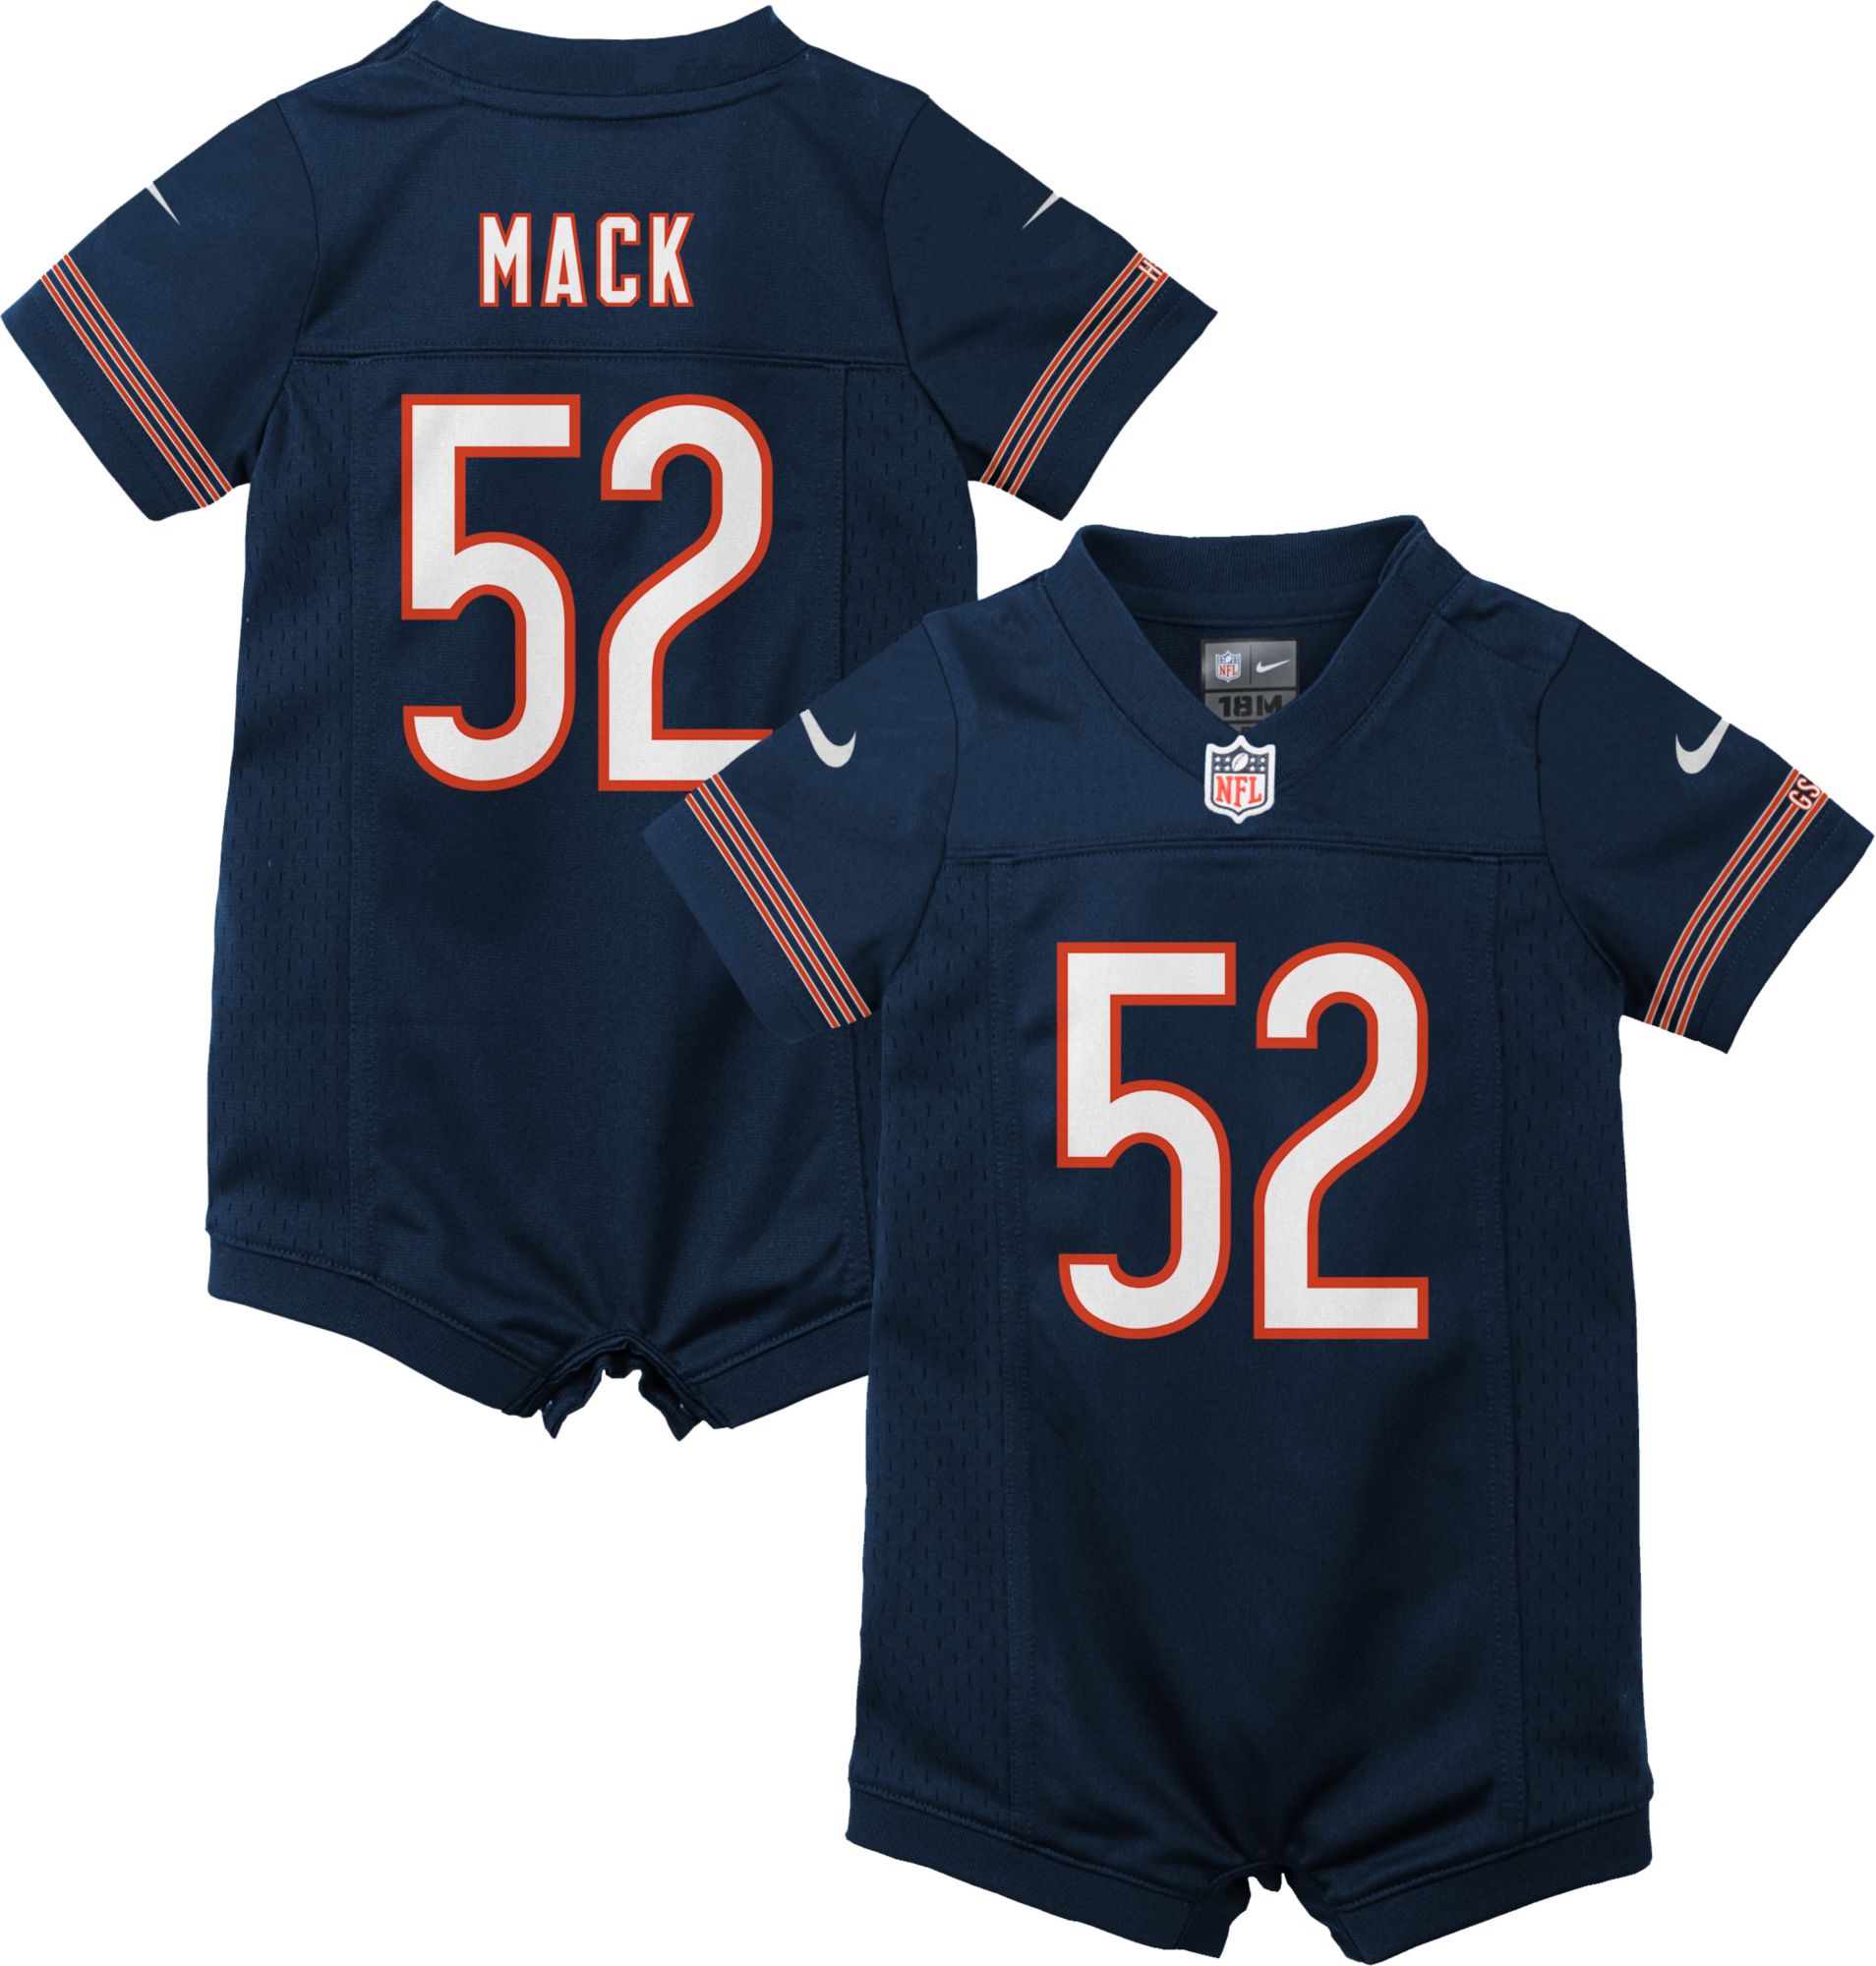 mack jersey bears